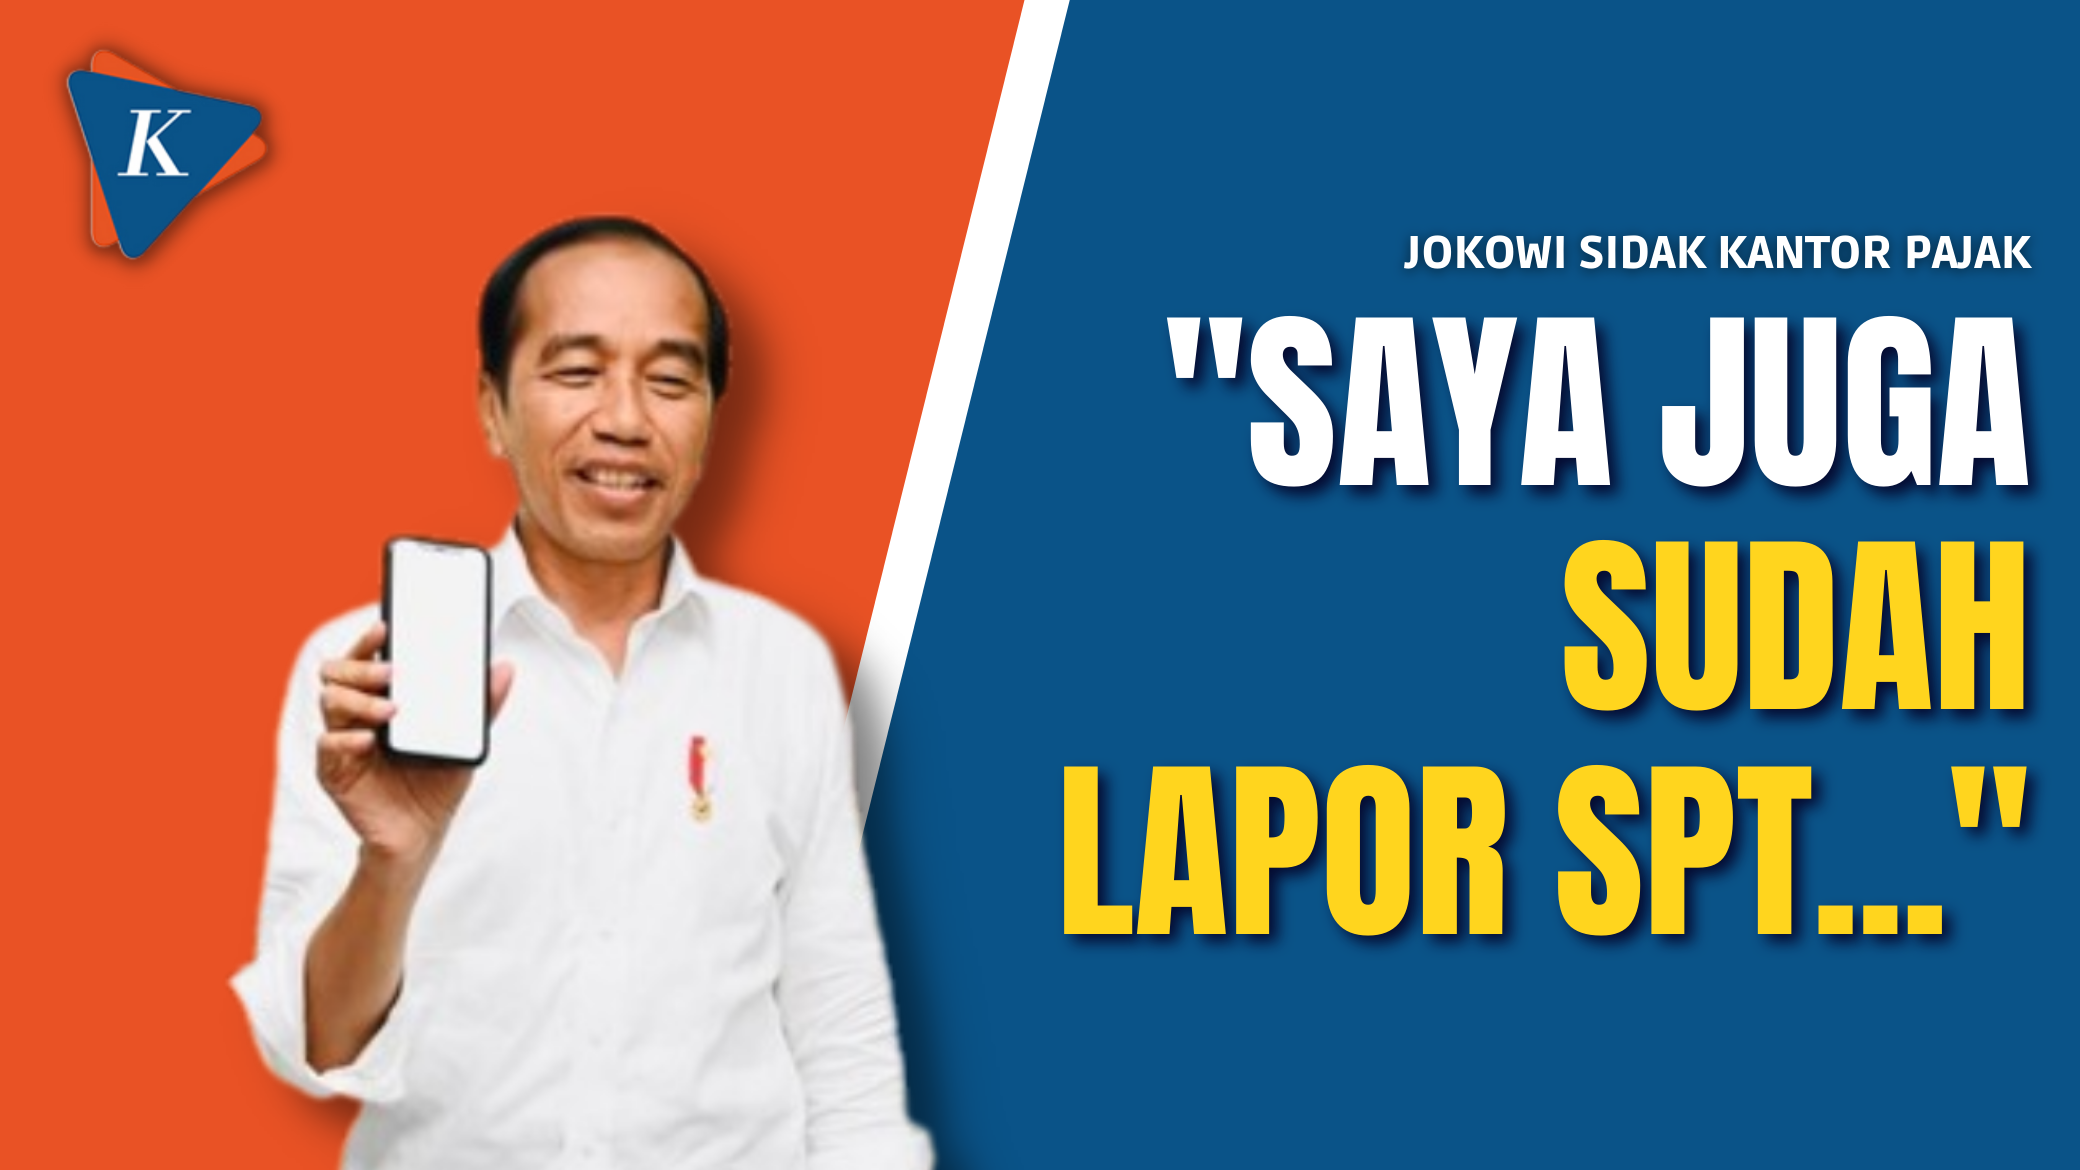 Saat Jokowi Sidak Kantor Pajak dan Tegaskan Sudah Lapor SPT